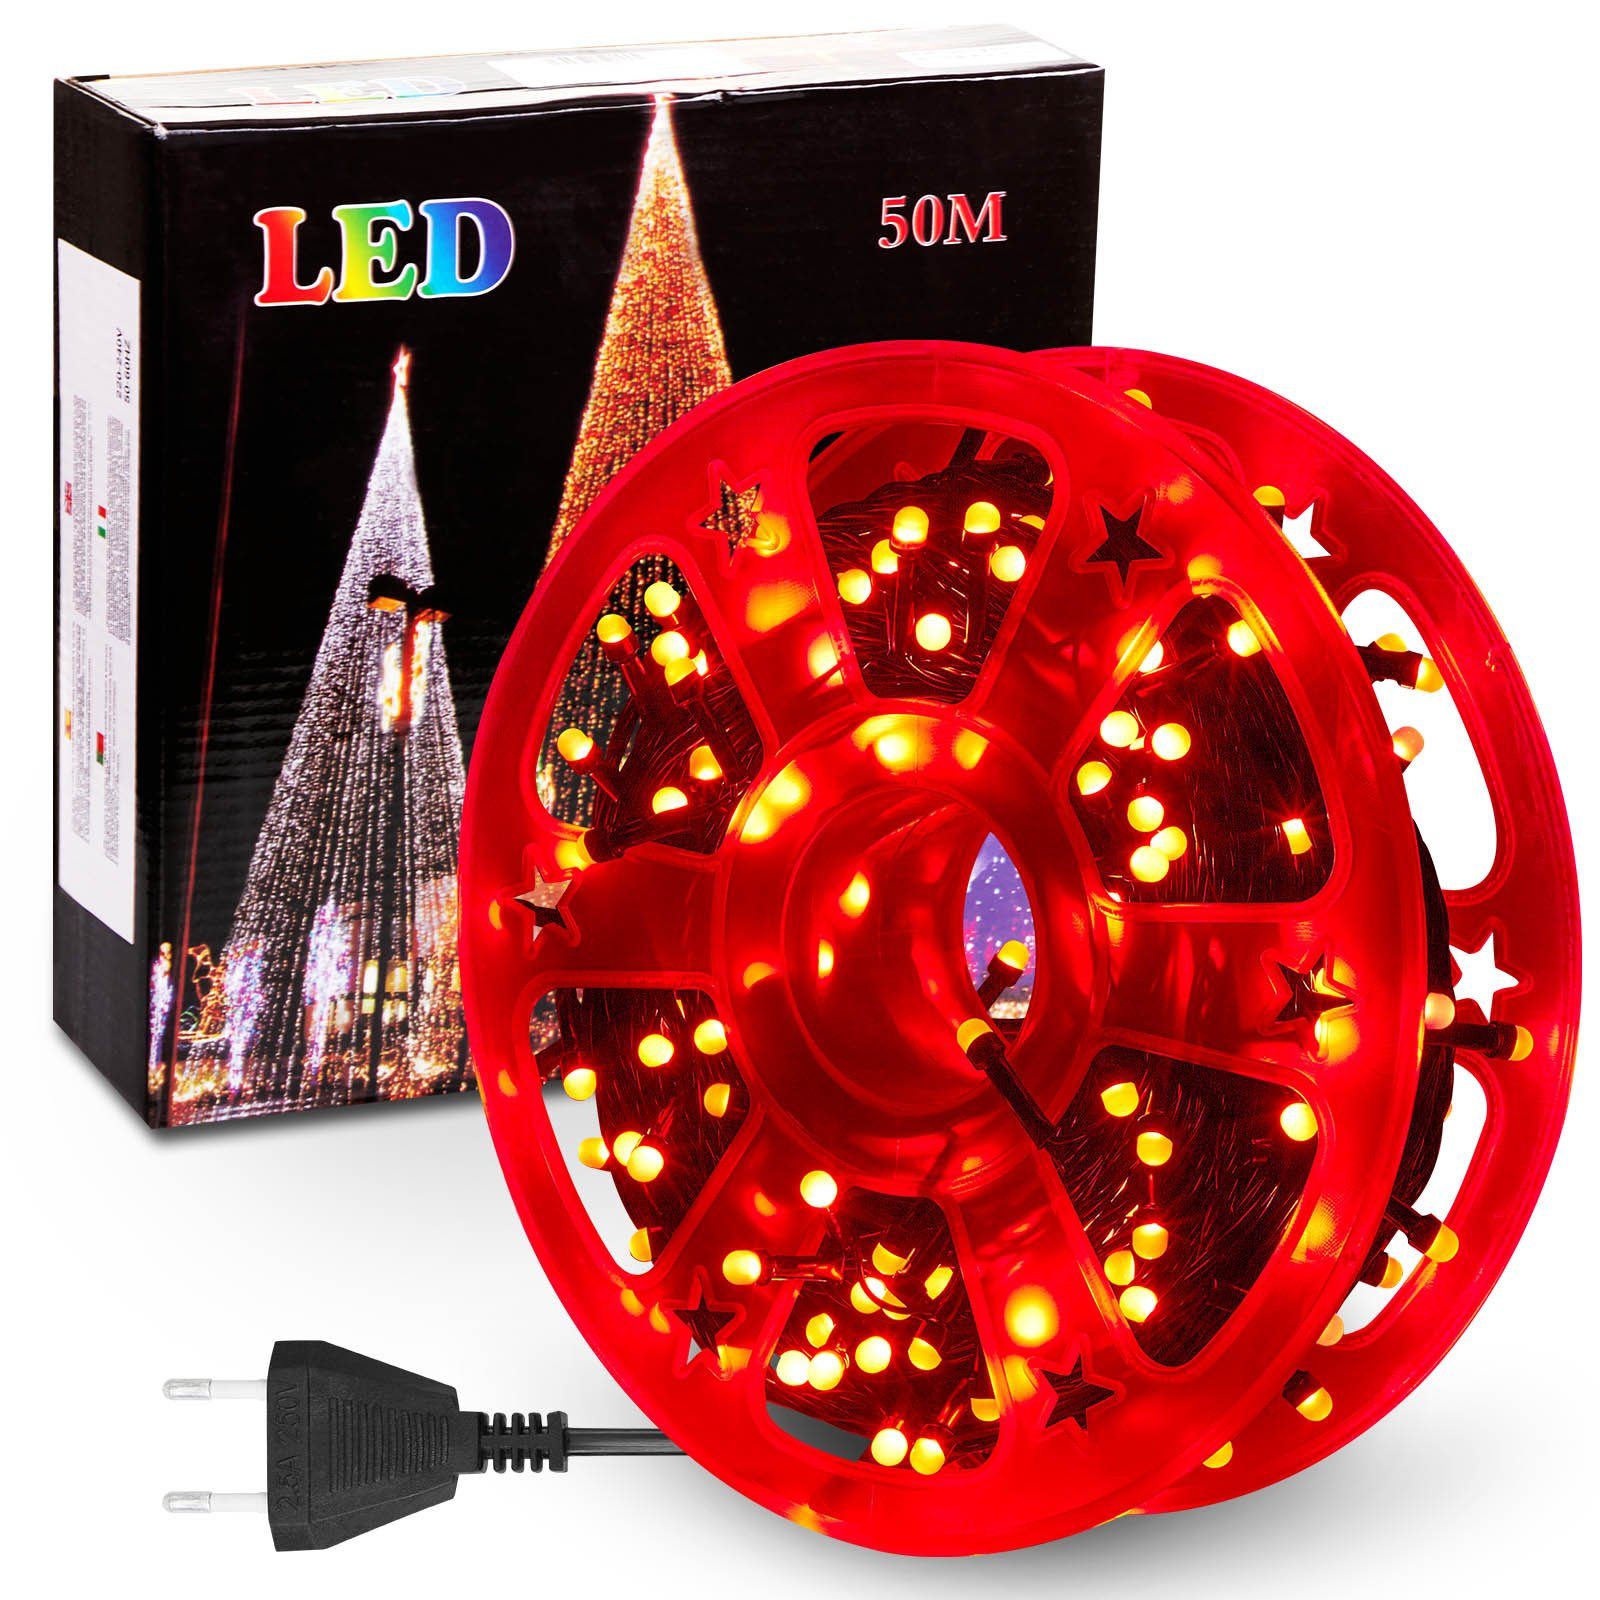 Rosnek LED-Lichterkette 50M, 240LEDs, 8 Modi, Speicherfunktion, für Weihnachtsbaum Garten Deko, wasserdicht, schwarzes Kabel, Spulenverpackung Rot